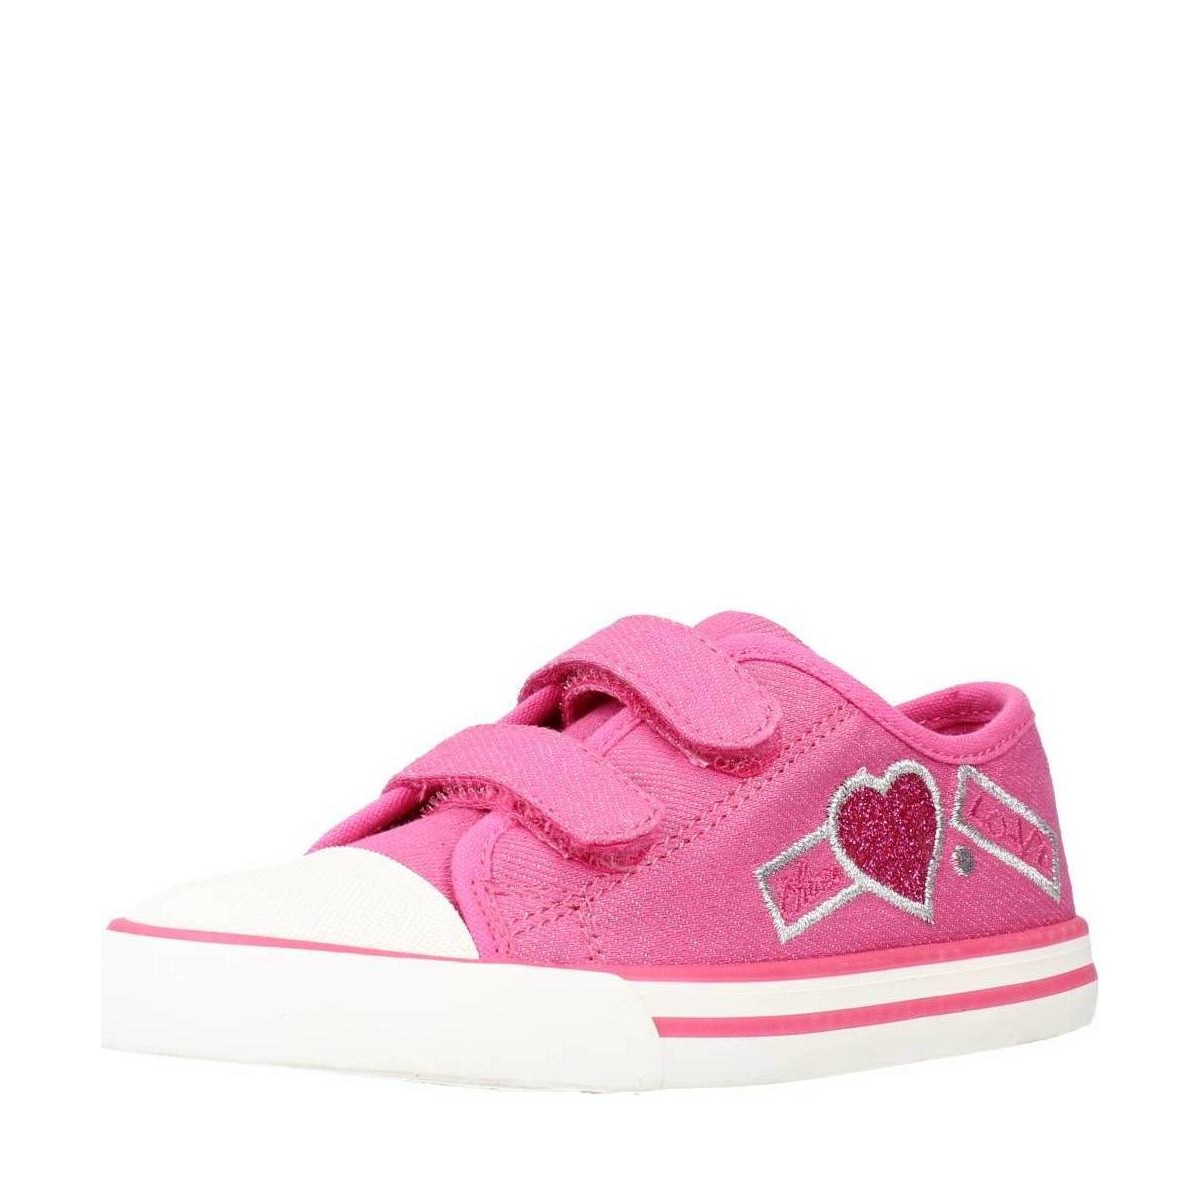 Παπούτσια Κορίτσι Χαμηλά Sneakers Chicco C0C0S Ροζ